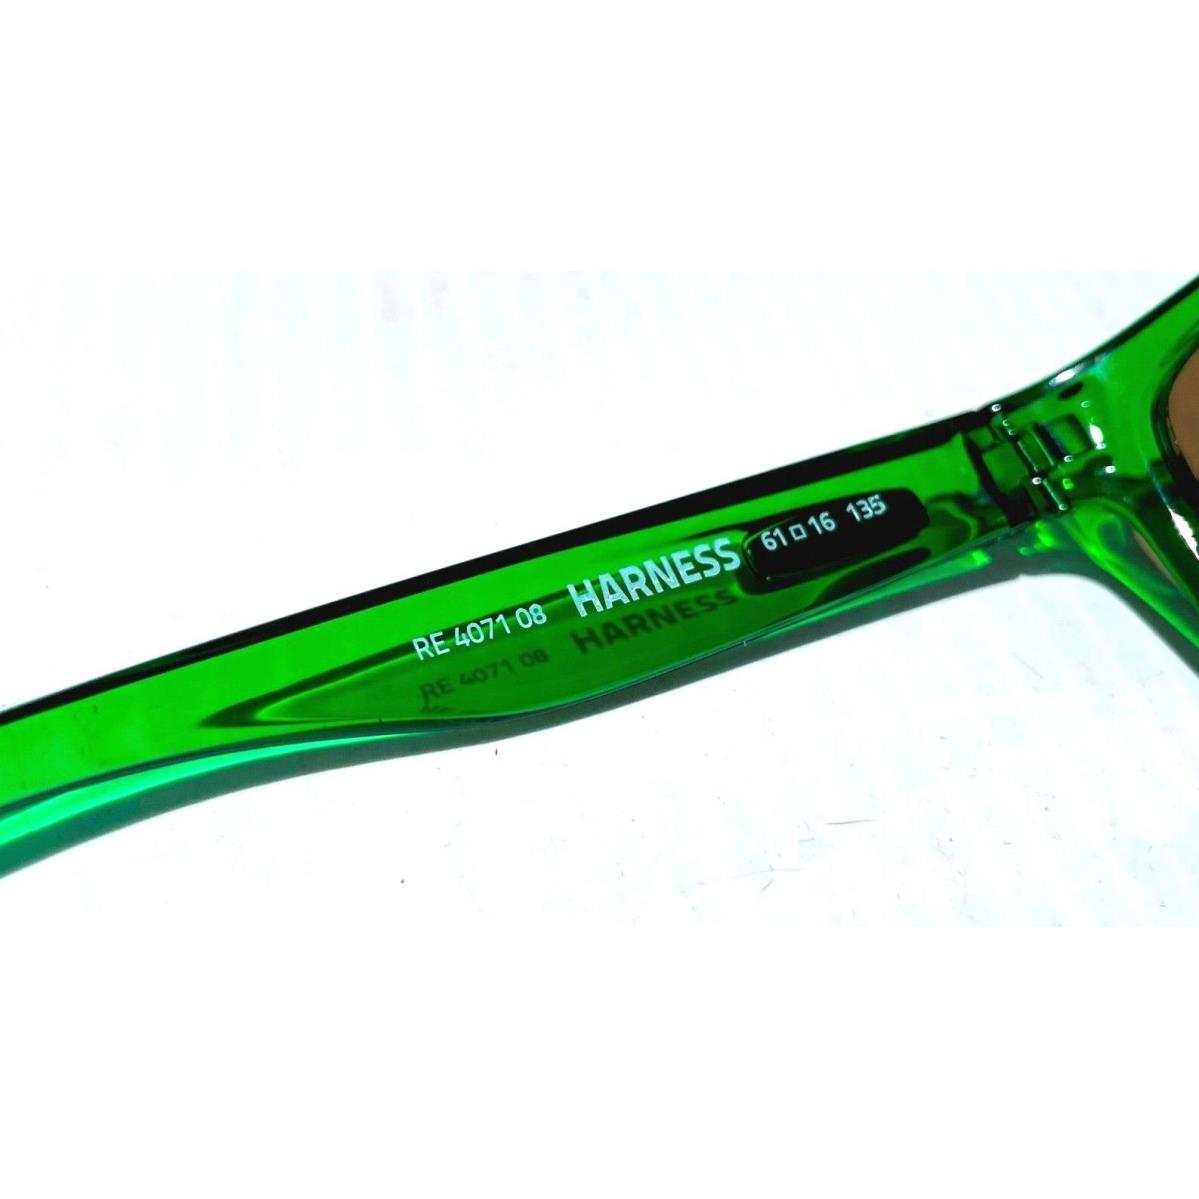 Revo sunglasses Harness - Green Frame, Green Lens 10